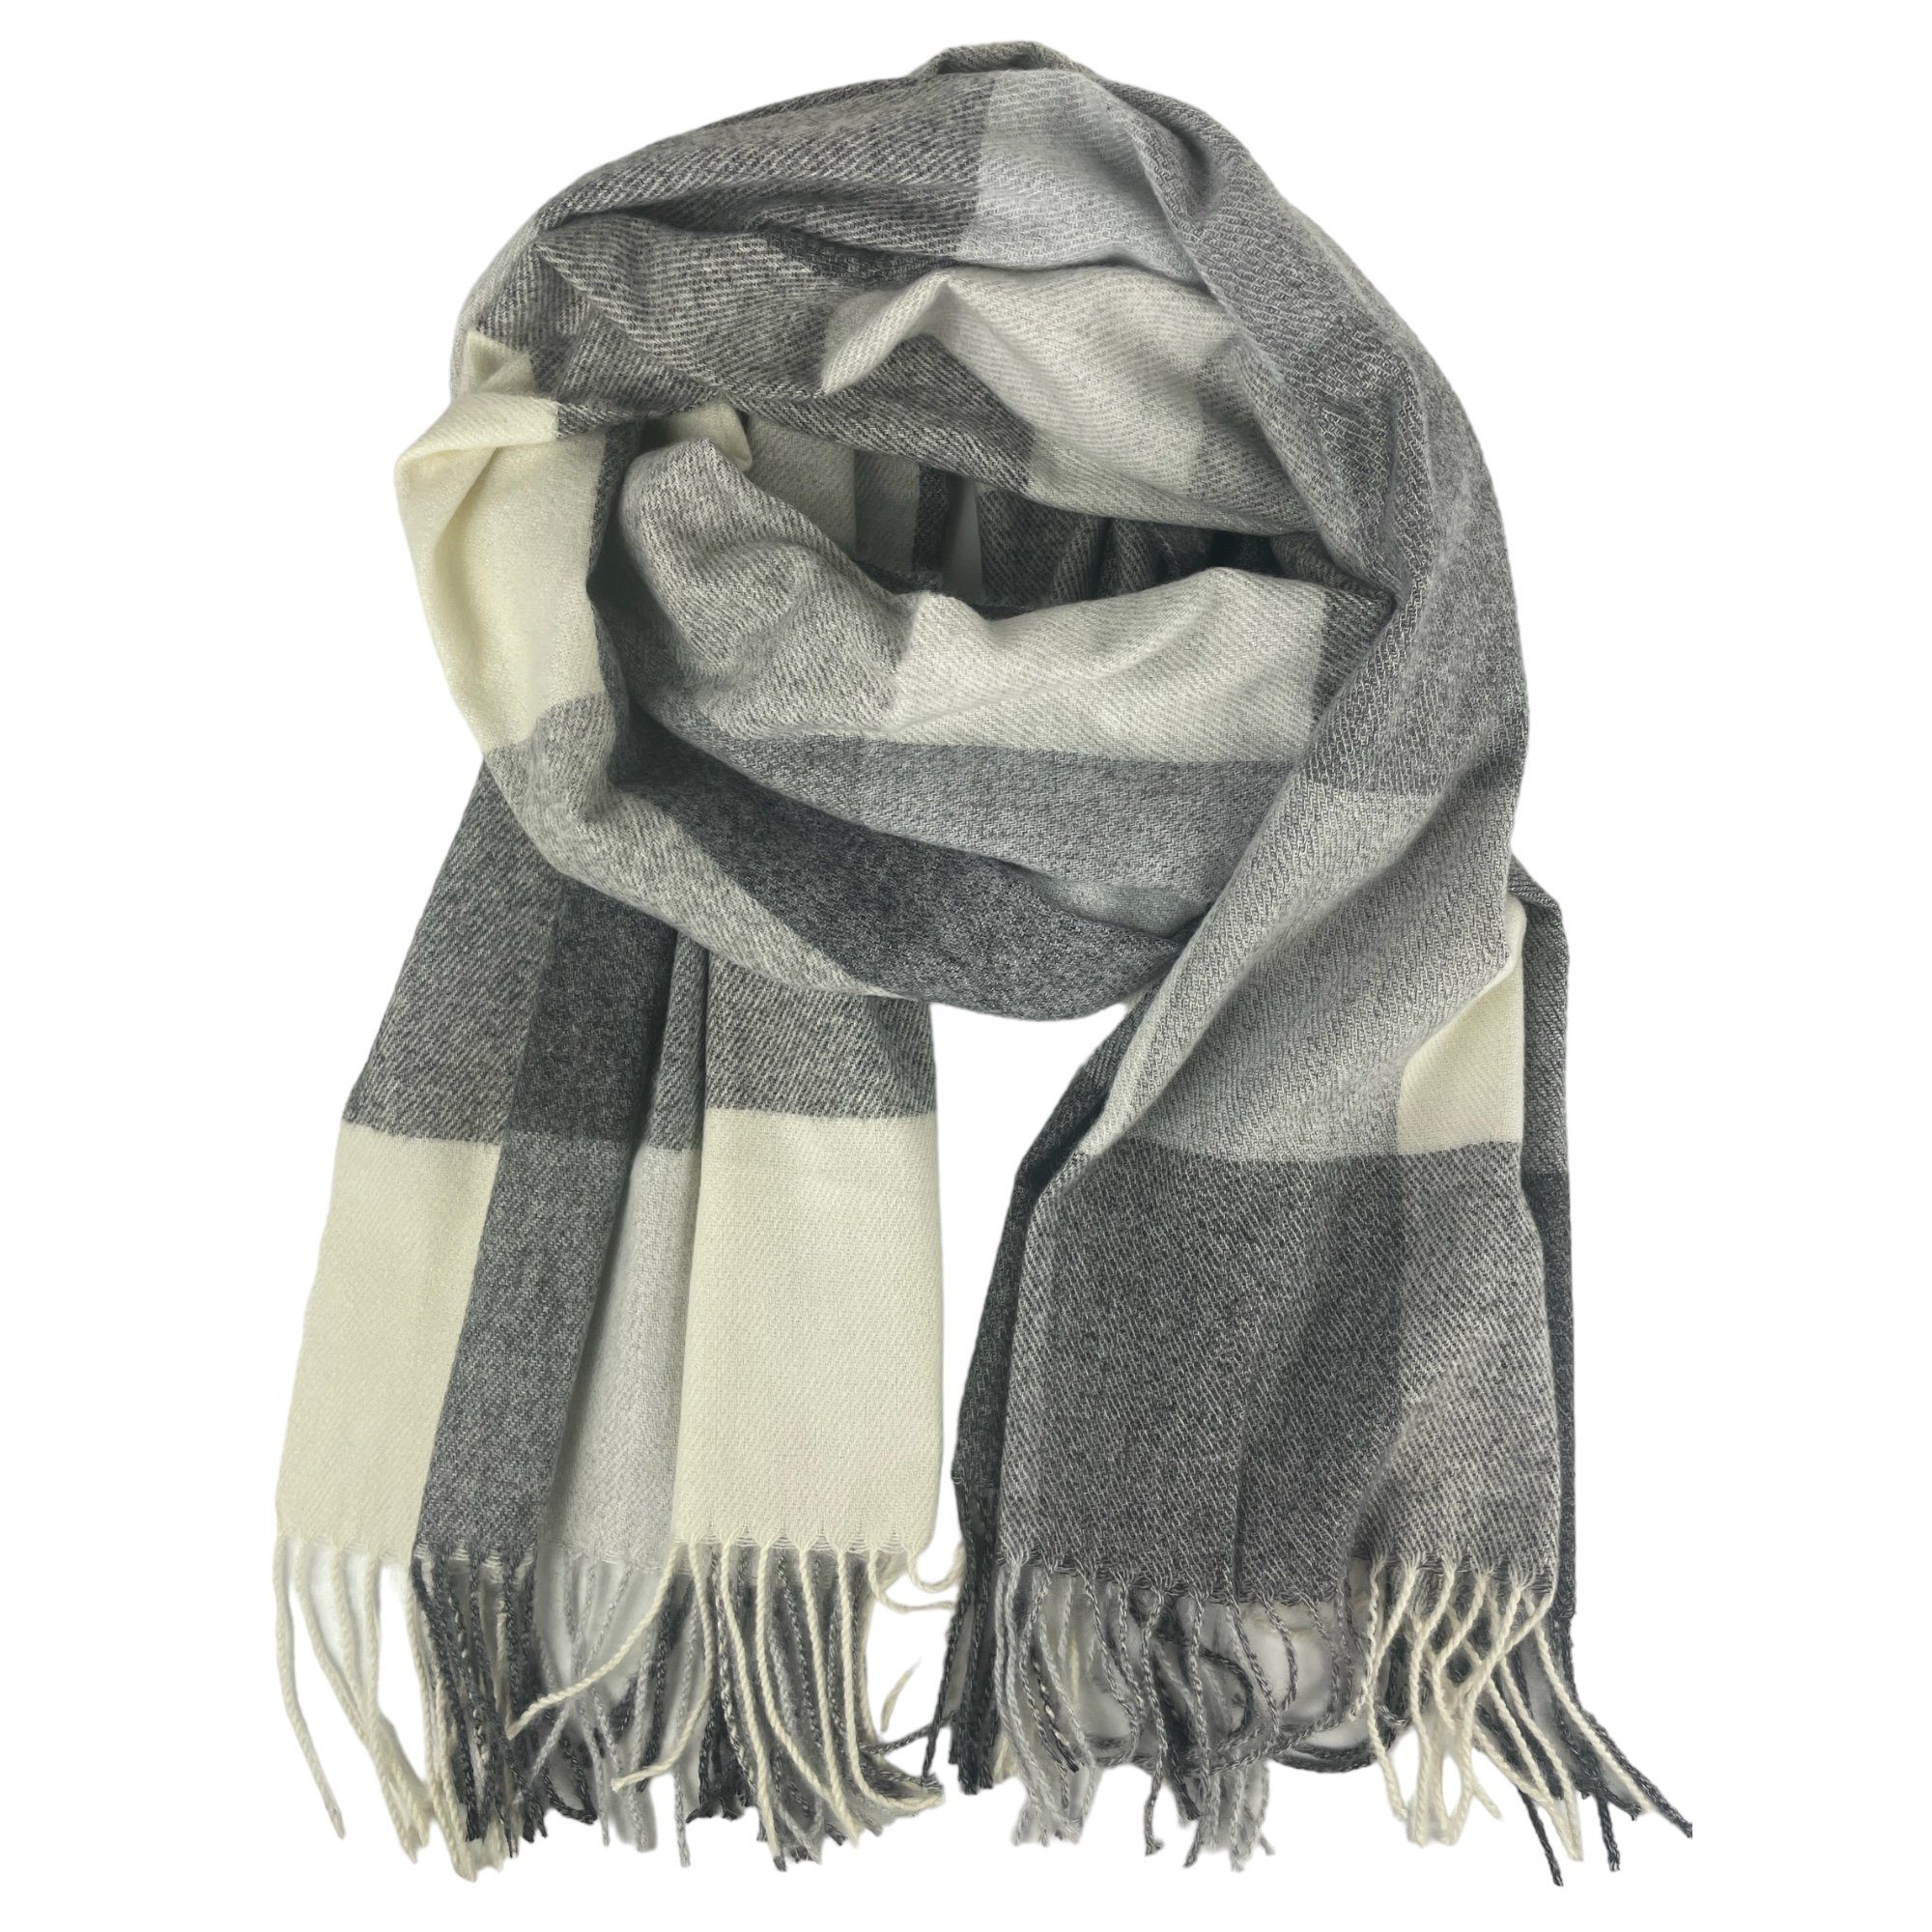 Taschen4life Schal großer Damen Schal mit Fransen, modernes Karomuster, tolle Farbkombination, Herbst/Winter Accessoires grau weiß